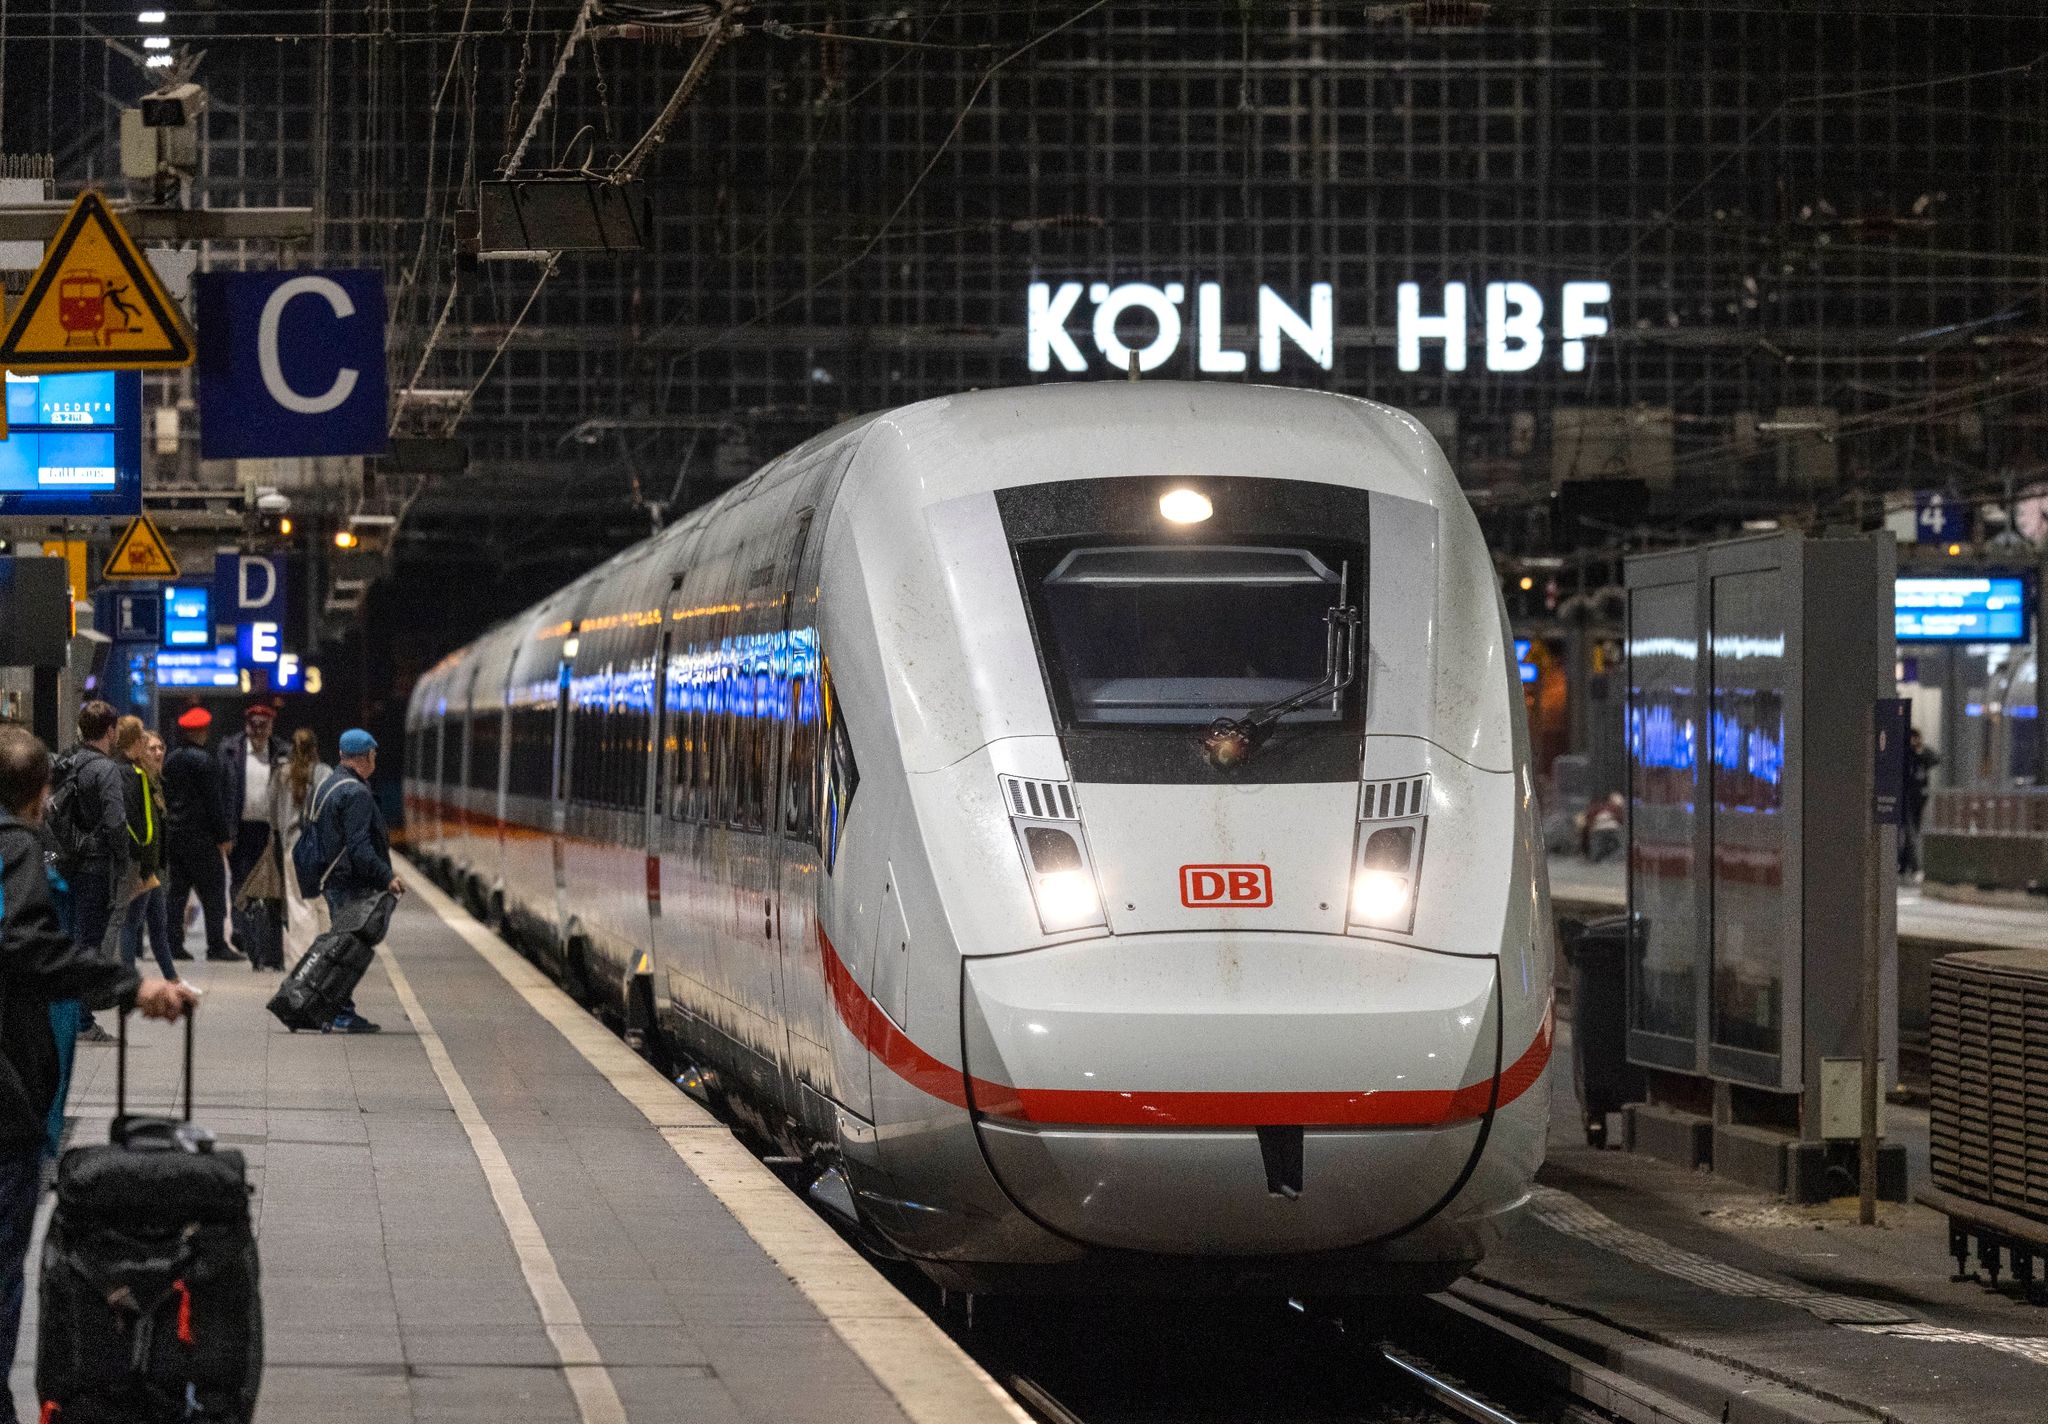 Wegen Bauarbeiten kommt es am Kölner Hauptbahnhof zu starken Einschränkungen für Reisende.